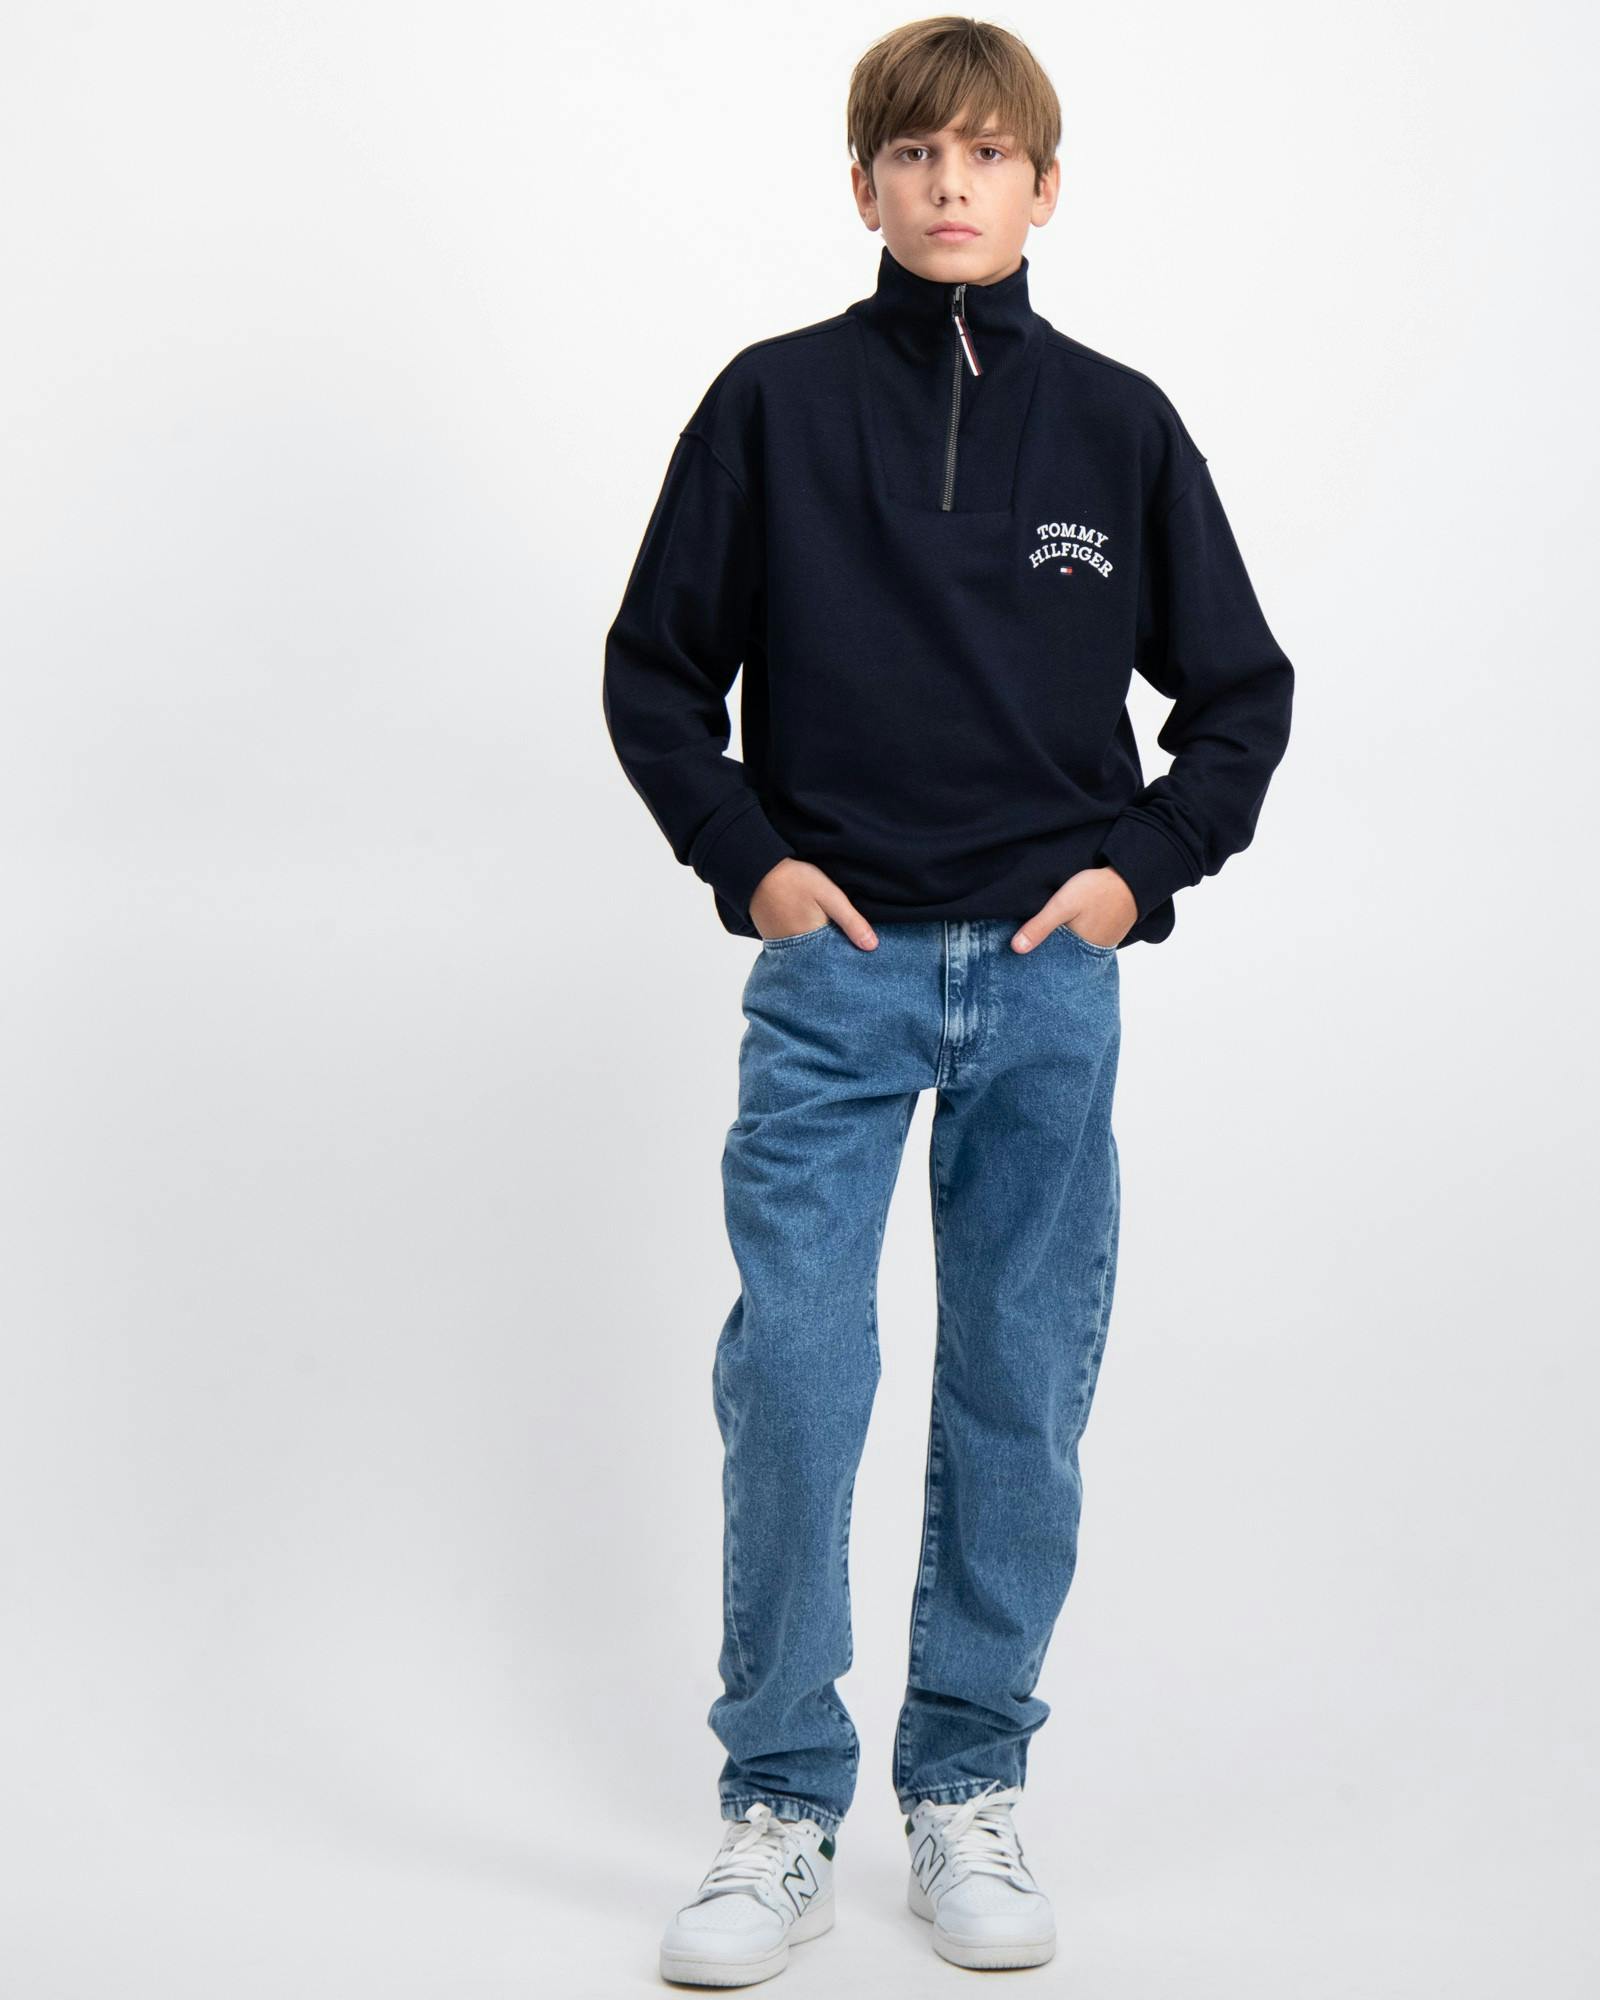 Tommy Hilfiger Jeans für Kinder und Store Kids Jugendliche Brand 